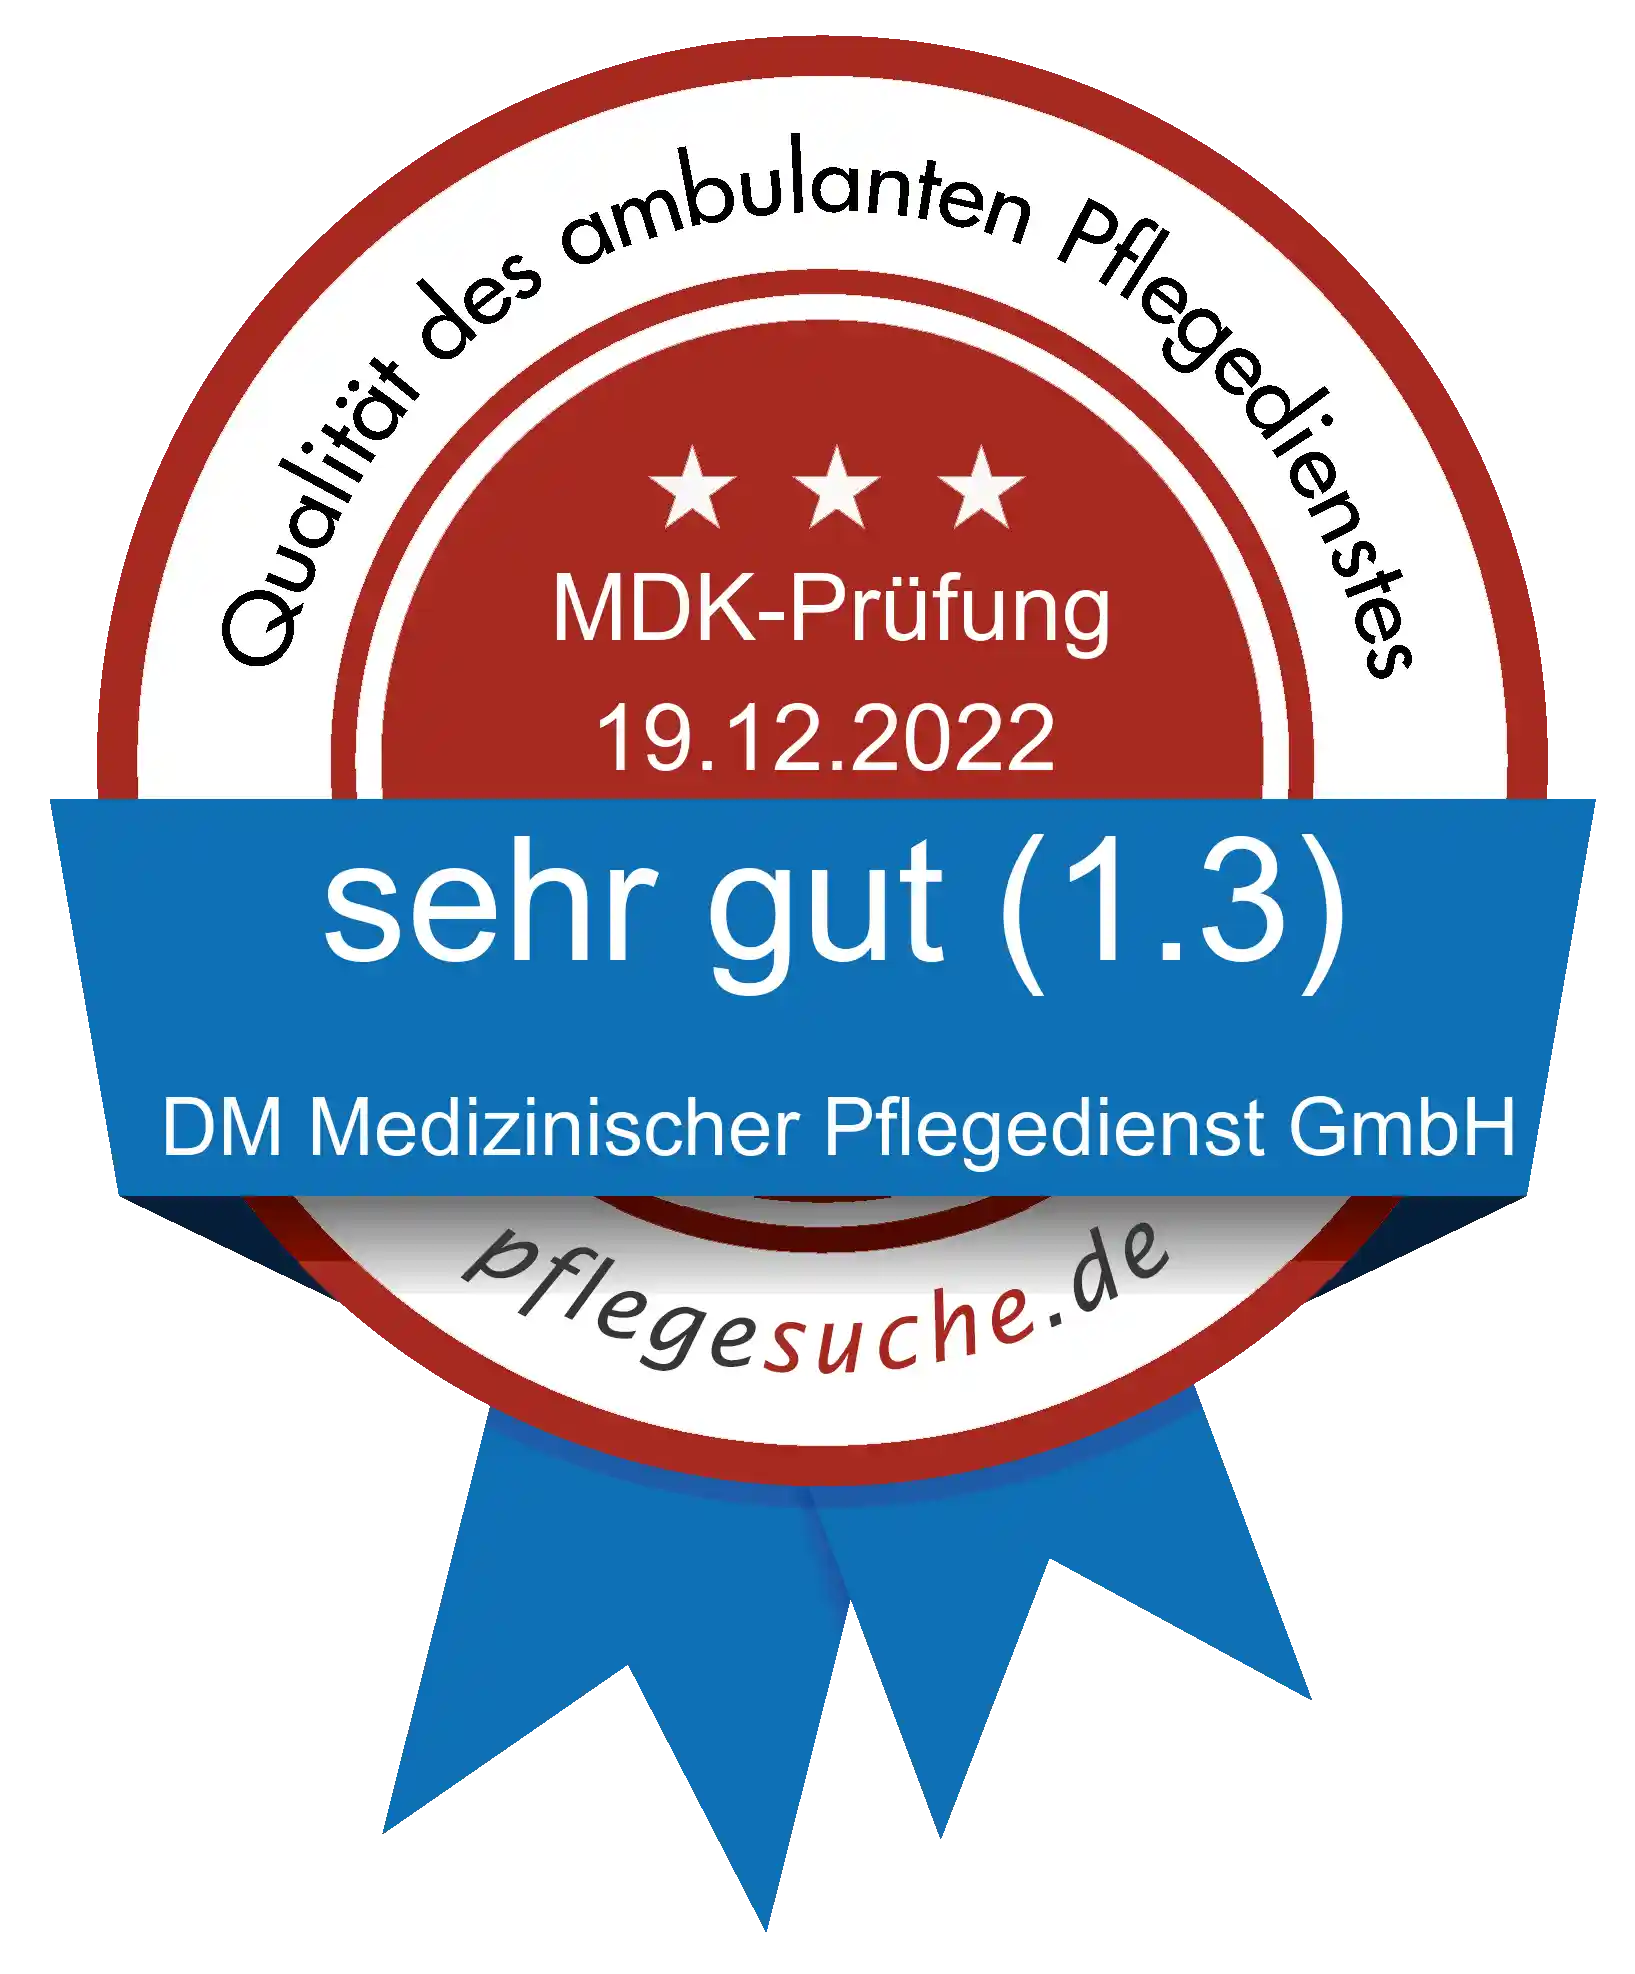 Siegel Benotung: DM Medizinischer Pflegedienst GmbH